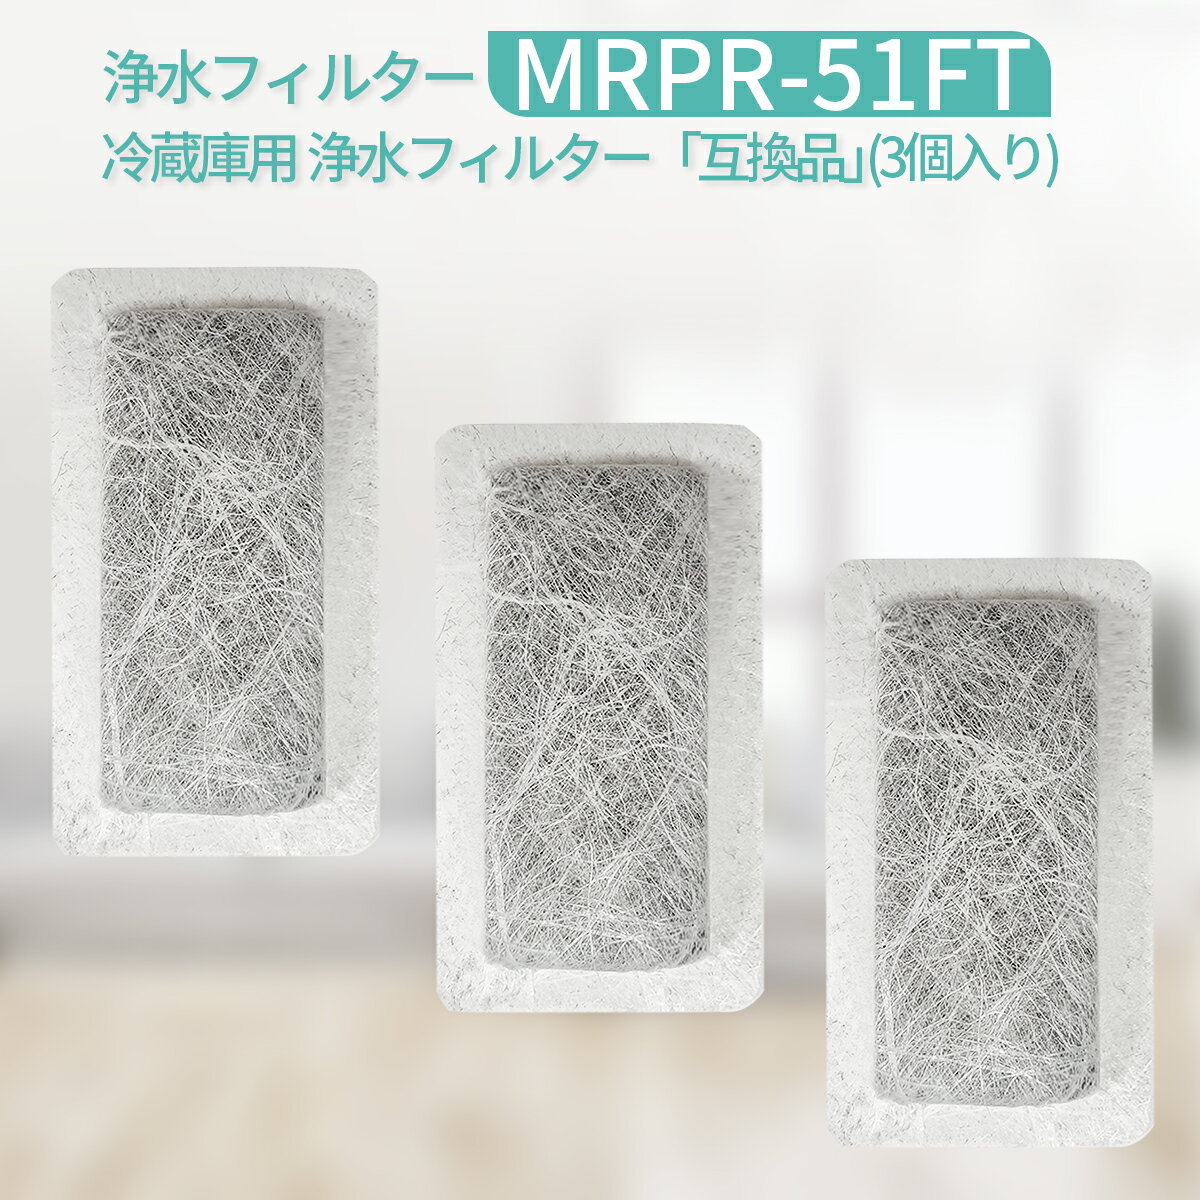 MRPR-51FT 冷蔵庫 自動製氷用 浄水フィルター mrpr-51ft 三菱 冷凍冷蔵庫 製氷機フィルター (互換品/3個入り)